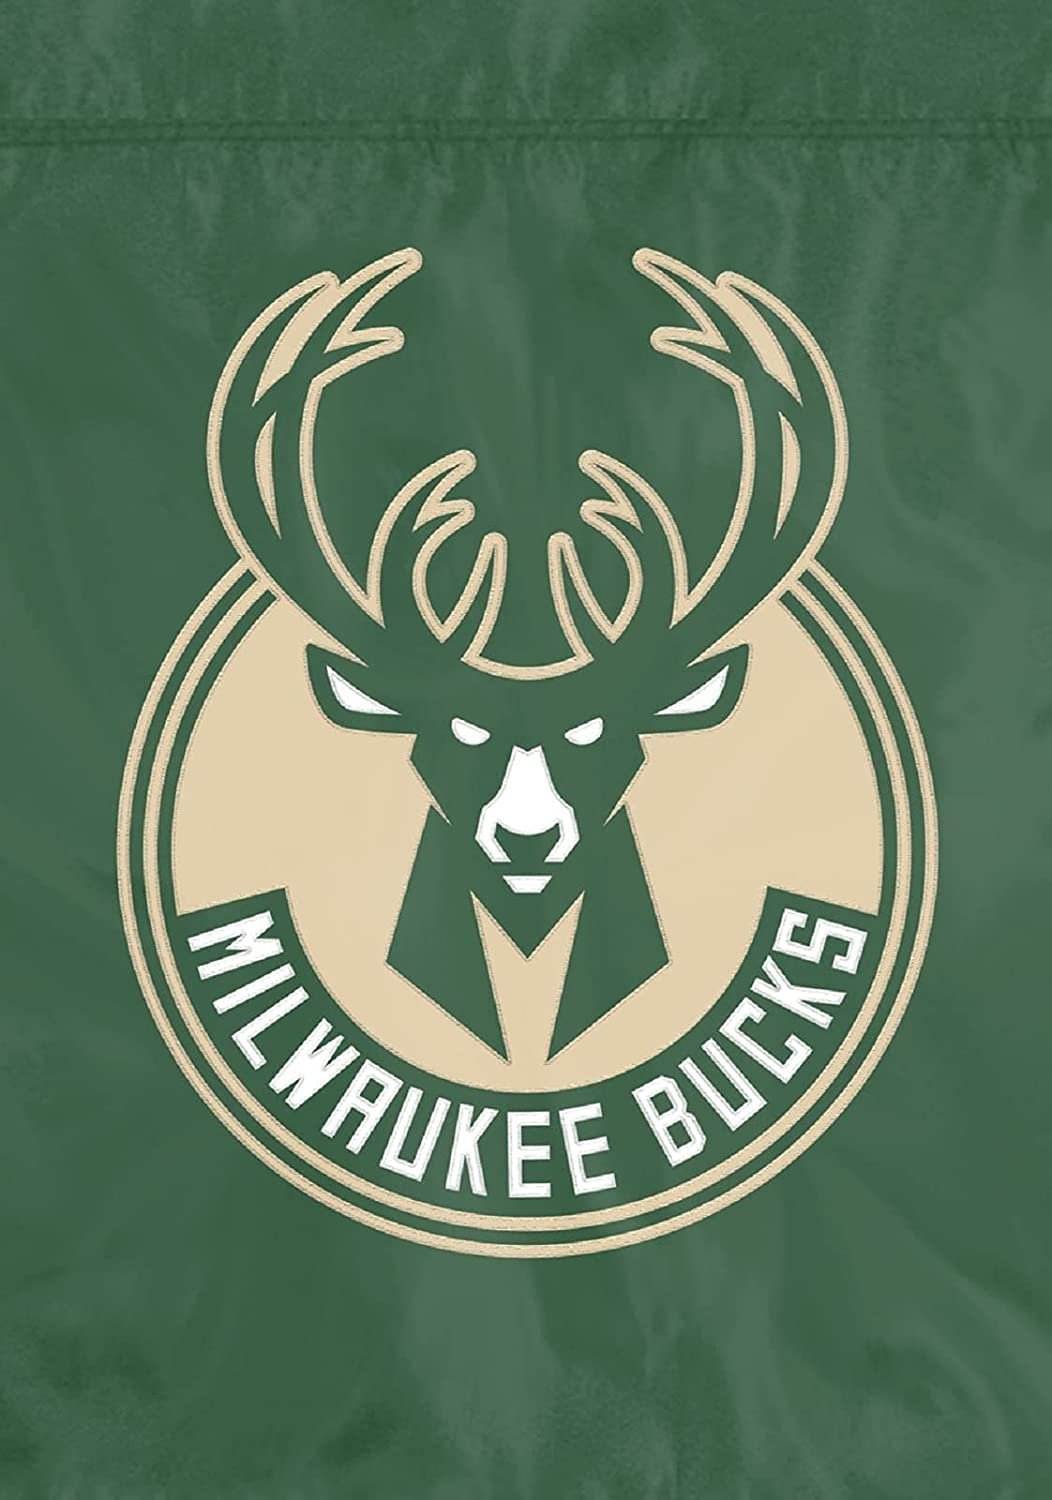 Milwaukee Bucks Premium Garden Flag Banner Applique Embroidered 12.5x18 Inch